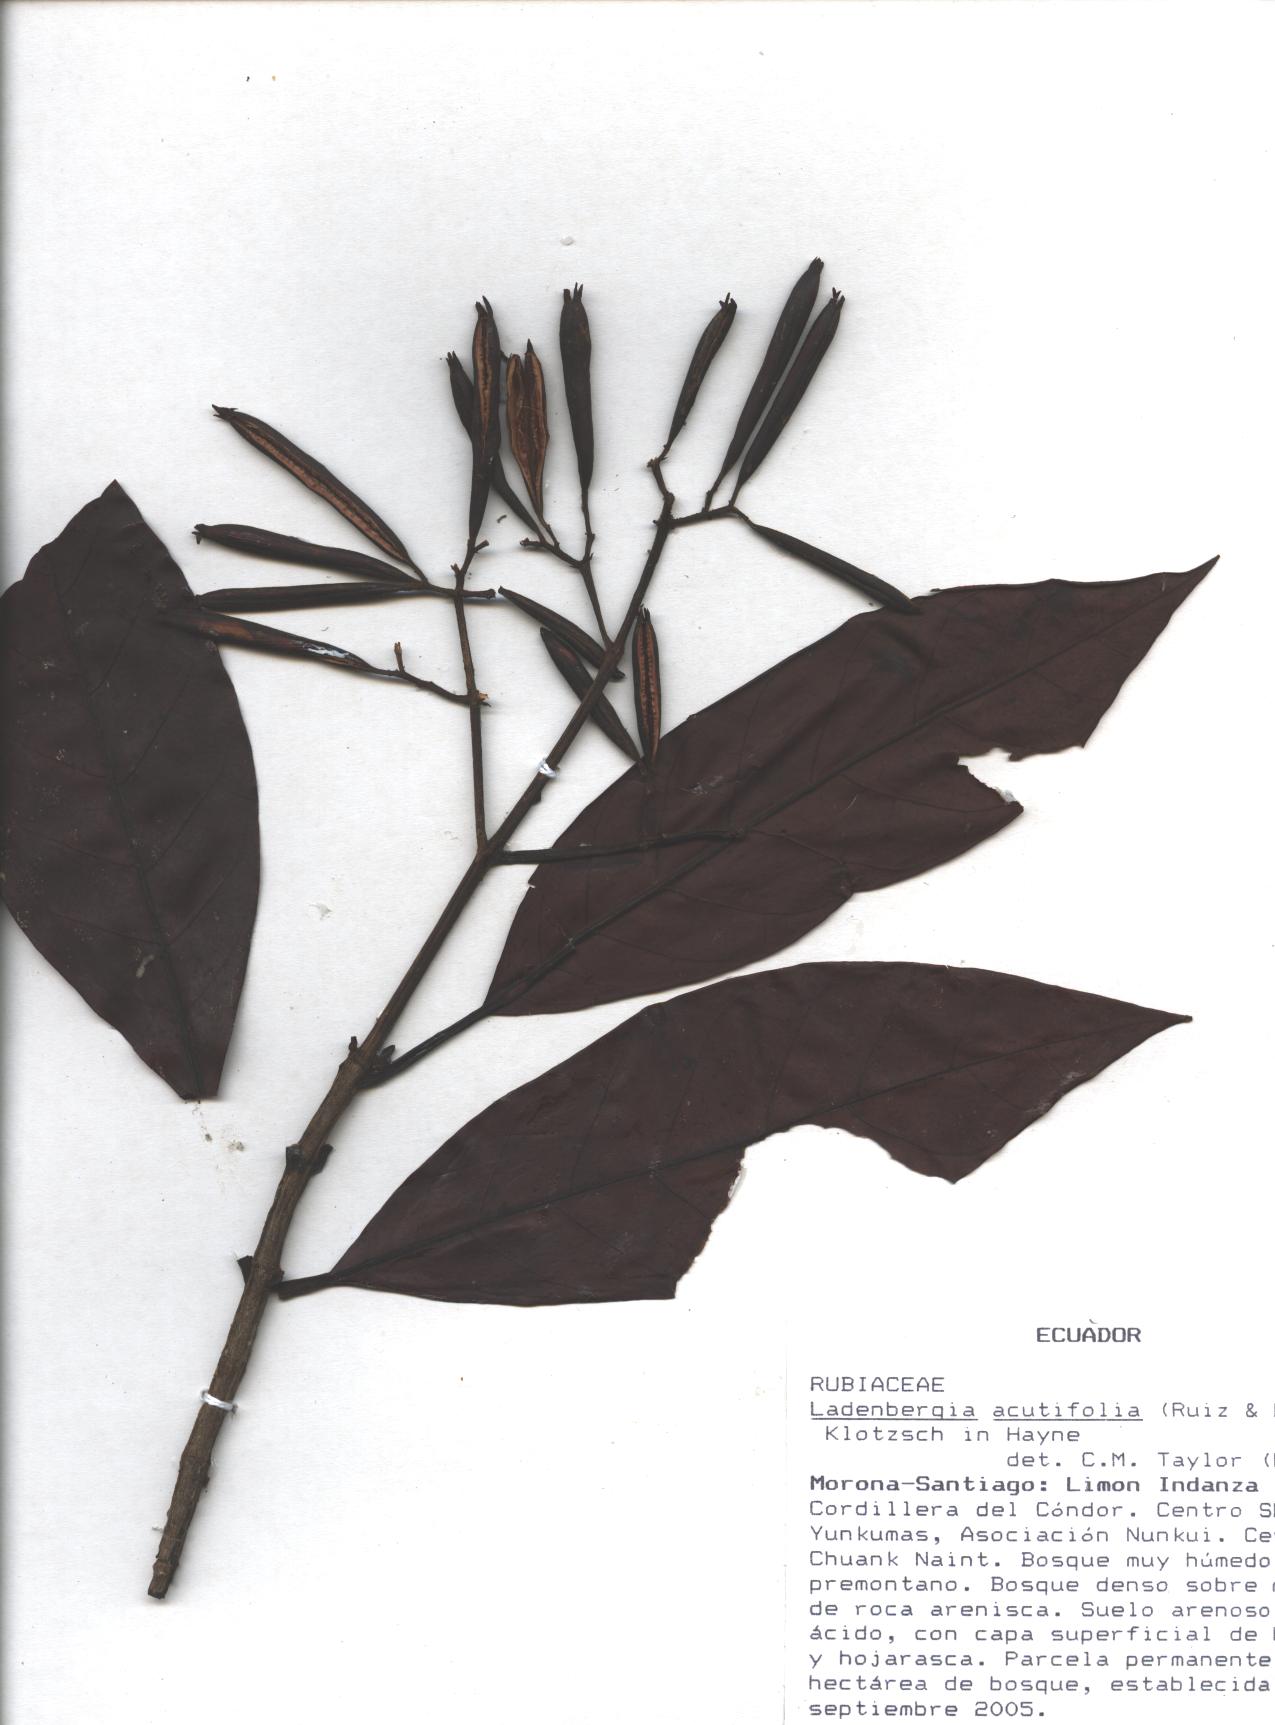 Ladenbergia acutifolia (Ruiz & Pav.) Klotzsch